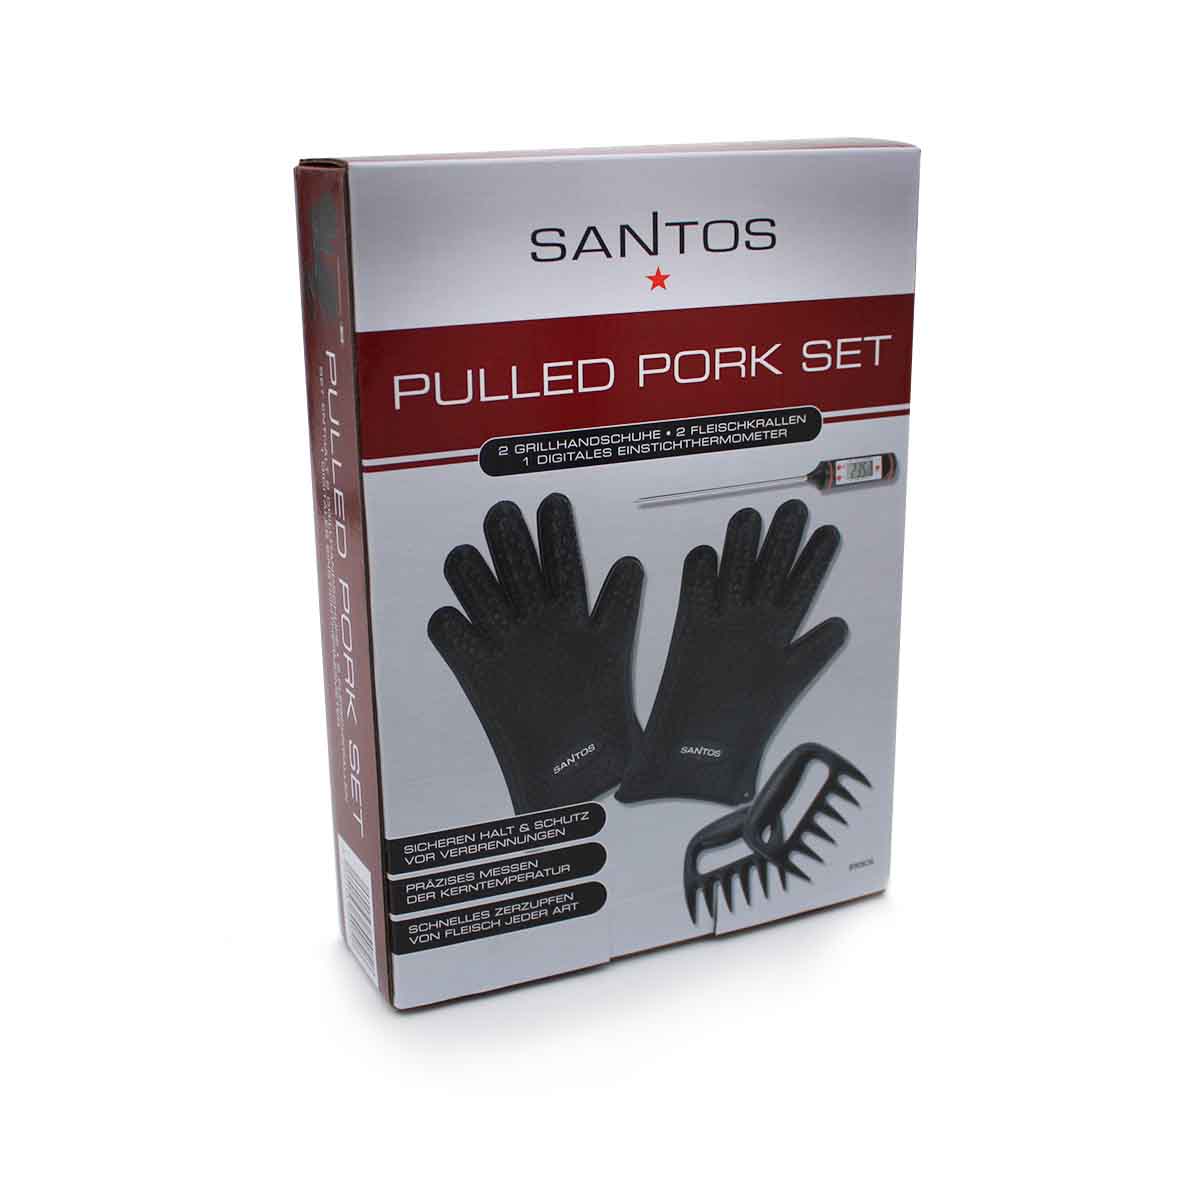 SANTOS Pulled Pork Set, 5-teilig Verpackung